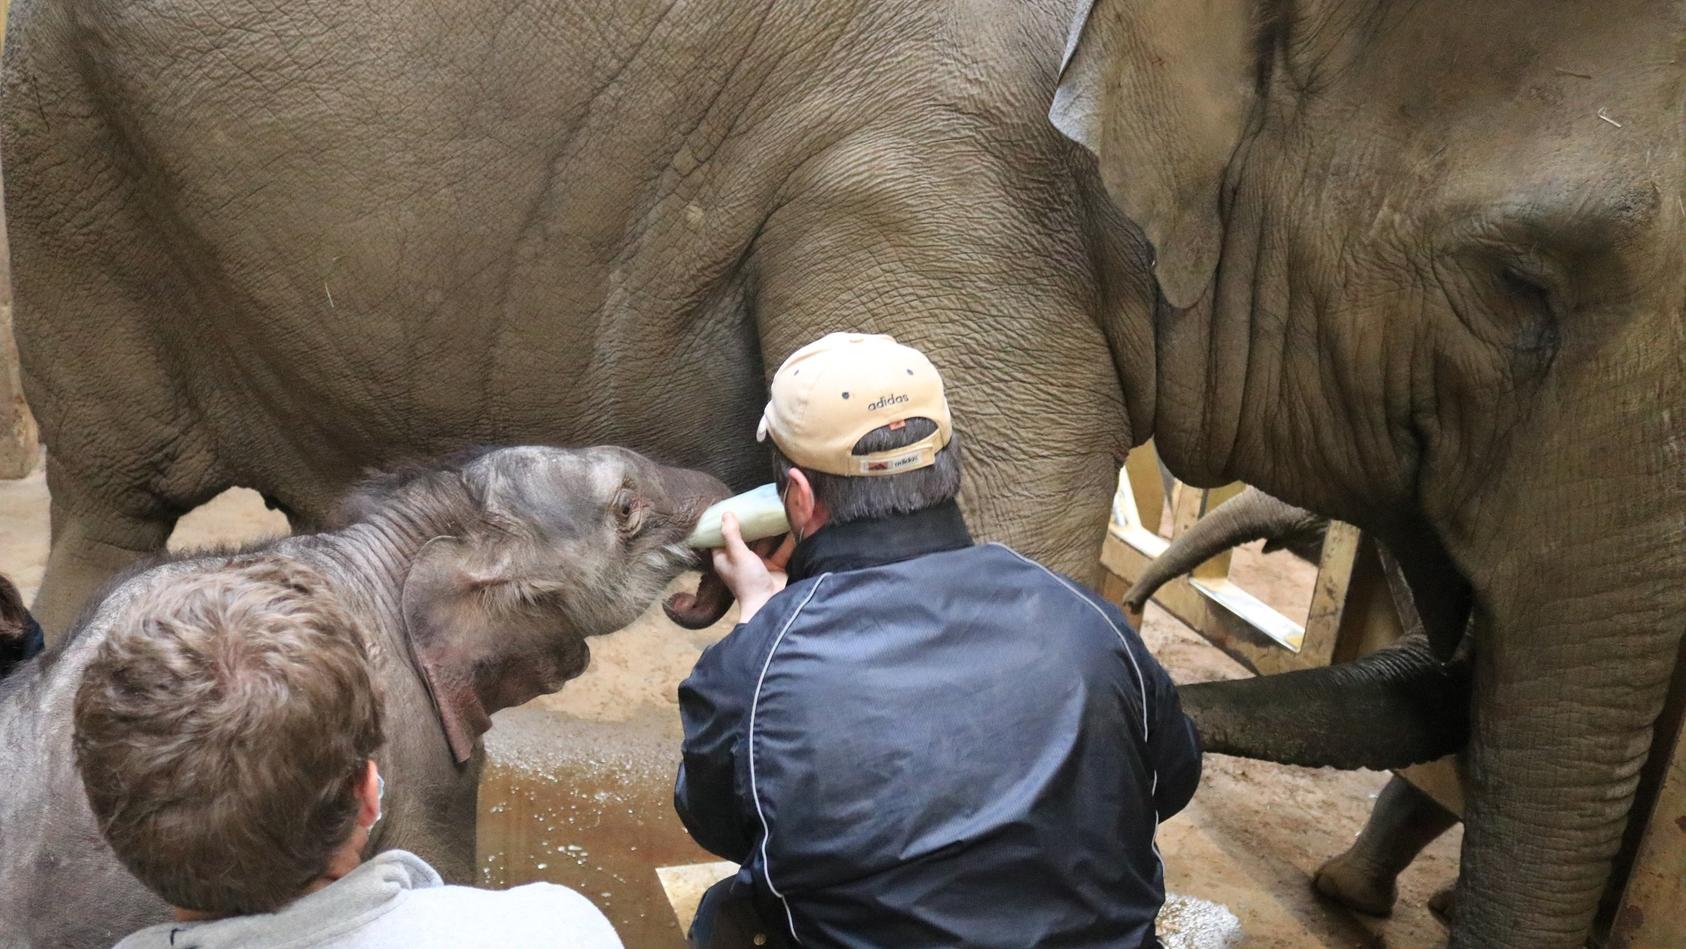 HANDOUT - 12.02.2021, Niedersachsen, Osnabrück: Der kleine Elefantenbulle trinkt nach der Geburt im Zoo Osnabrück zunächst aus einer Flasche. Das Jungtier, das noch keinen Namen hatte, wurde am 16.02.2021, nur wenige Tage nach seiner Geburt eingeschl